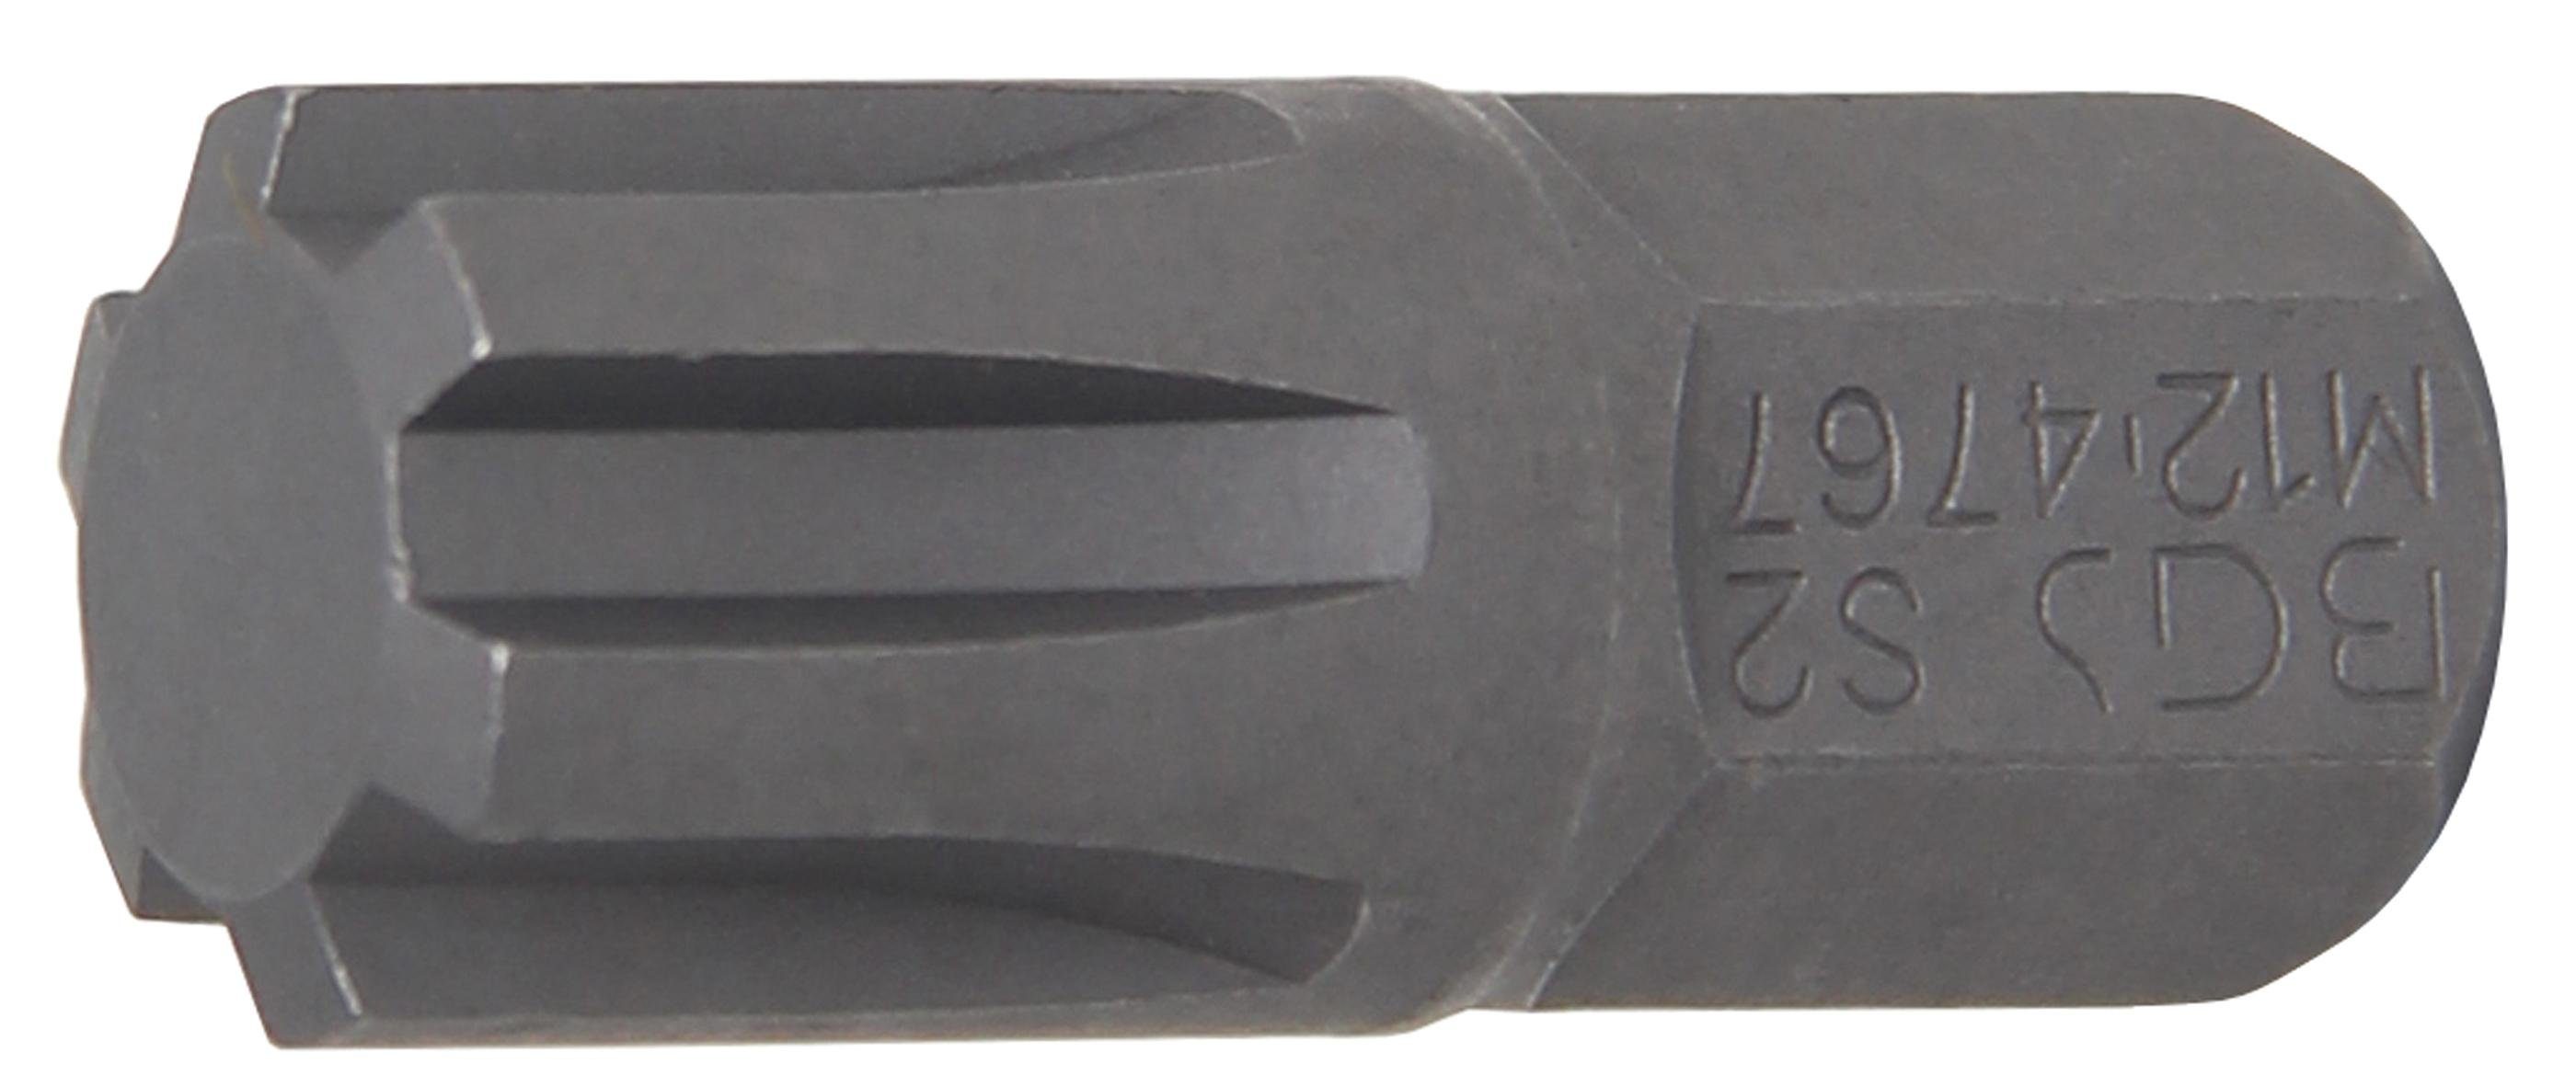 BGS technic Bit-Schraubendreher Bit, Antrieb Außensechskant 10 mm (3/8), Keil-Profil (für RIBE) M12